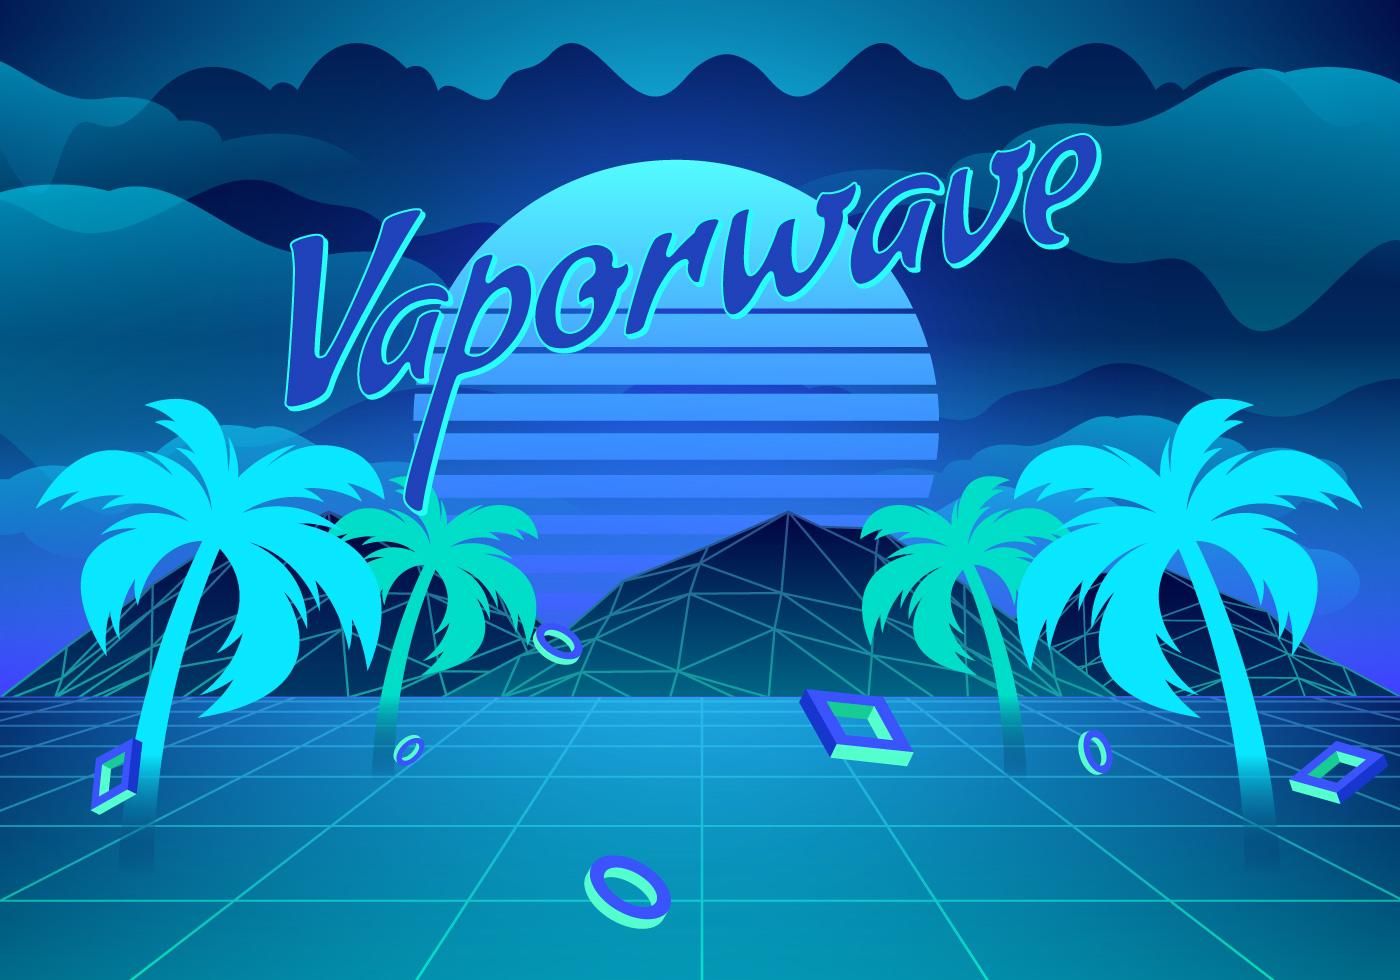 Vaporwave Background Illustration